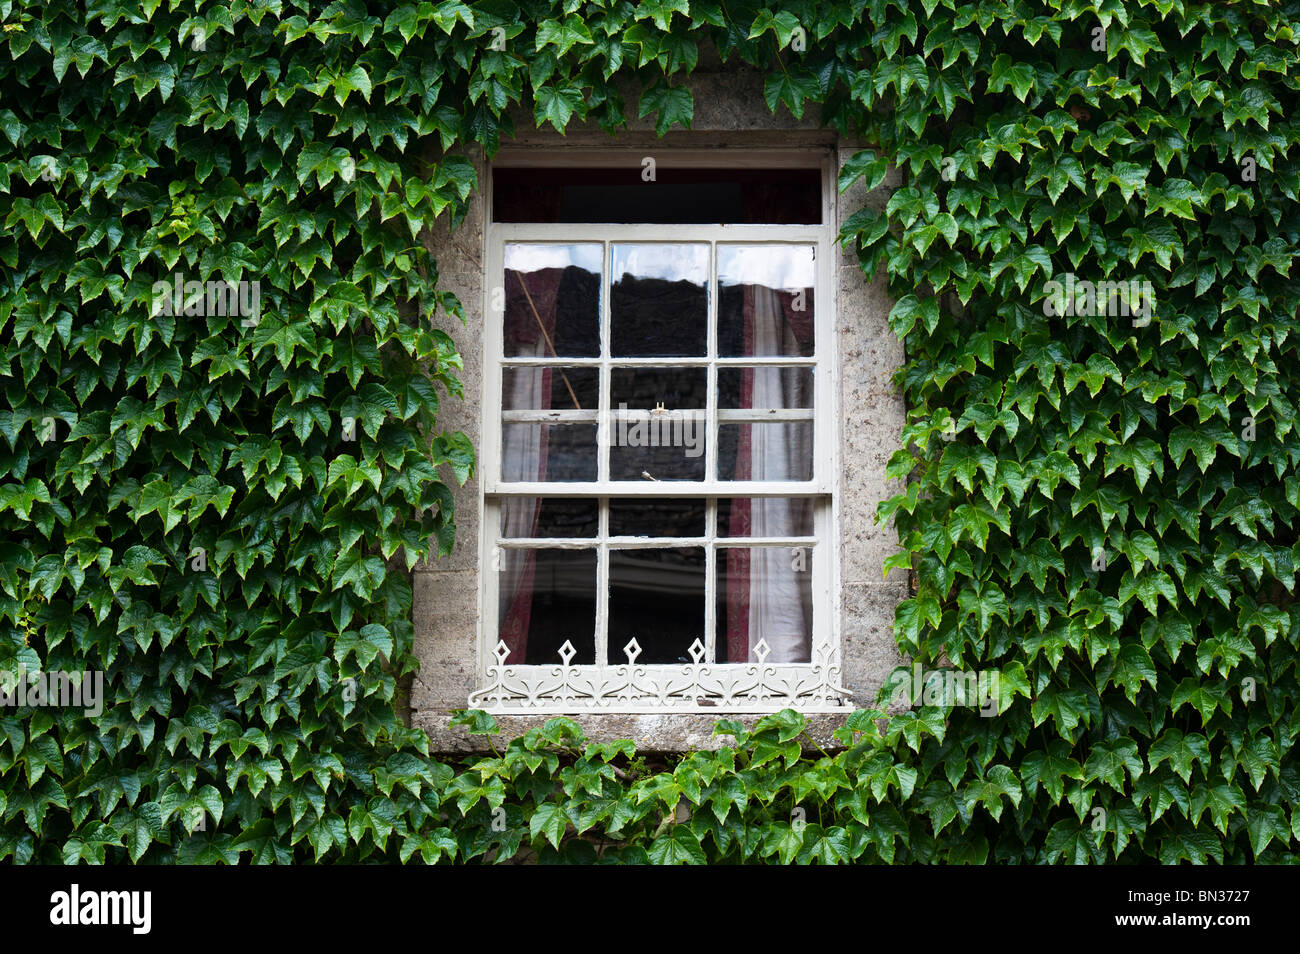 Parthenocissus tricuspidata. Boston ivy / superriduttore giapponese che copre la parete di una casa che circonda un antico telaio in legno finestra. Cotswolds, UK. Foto Stock